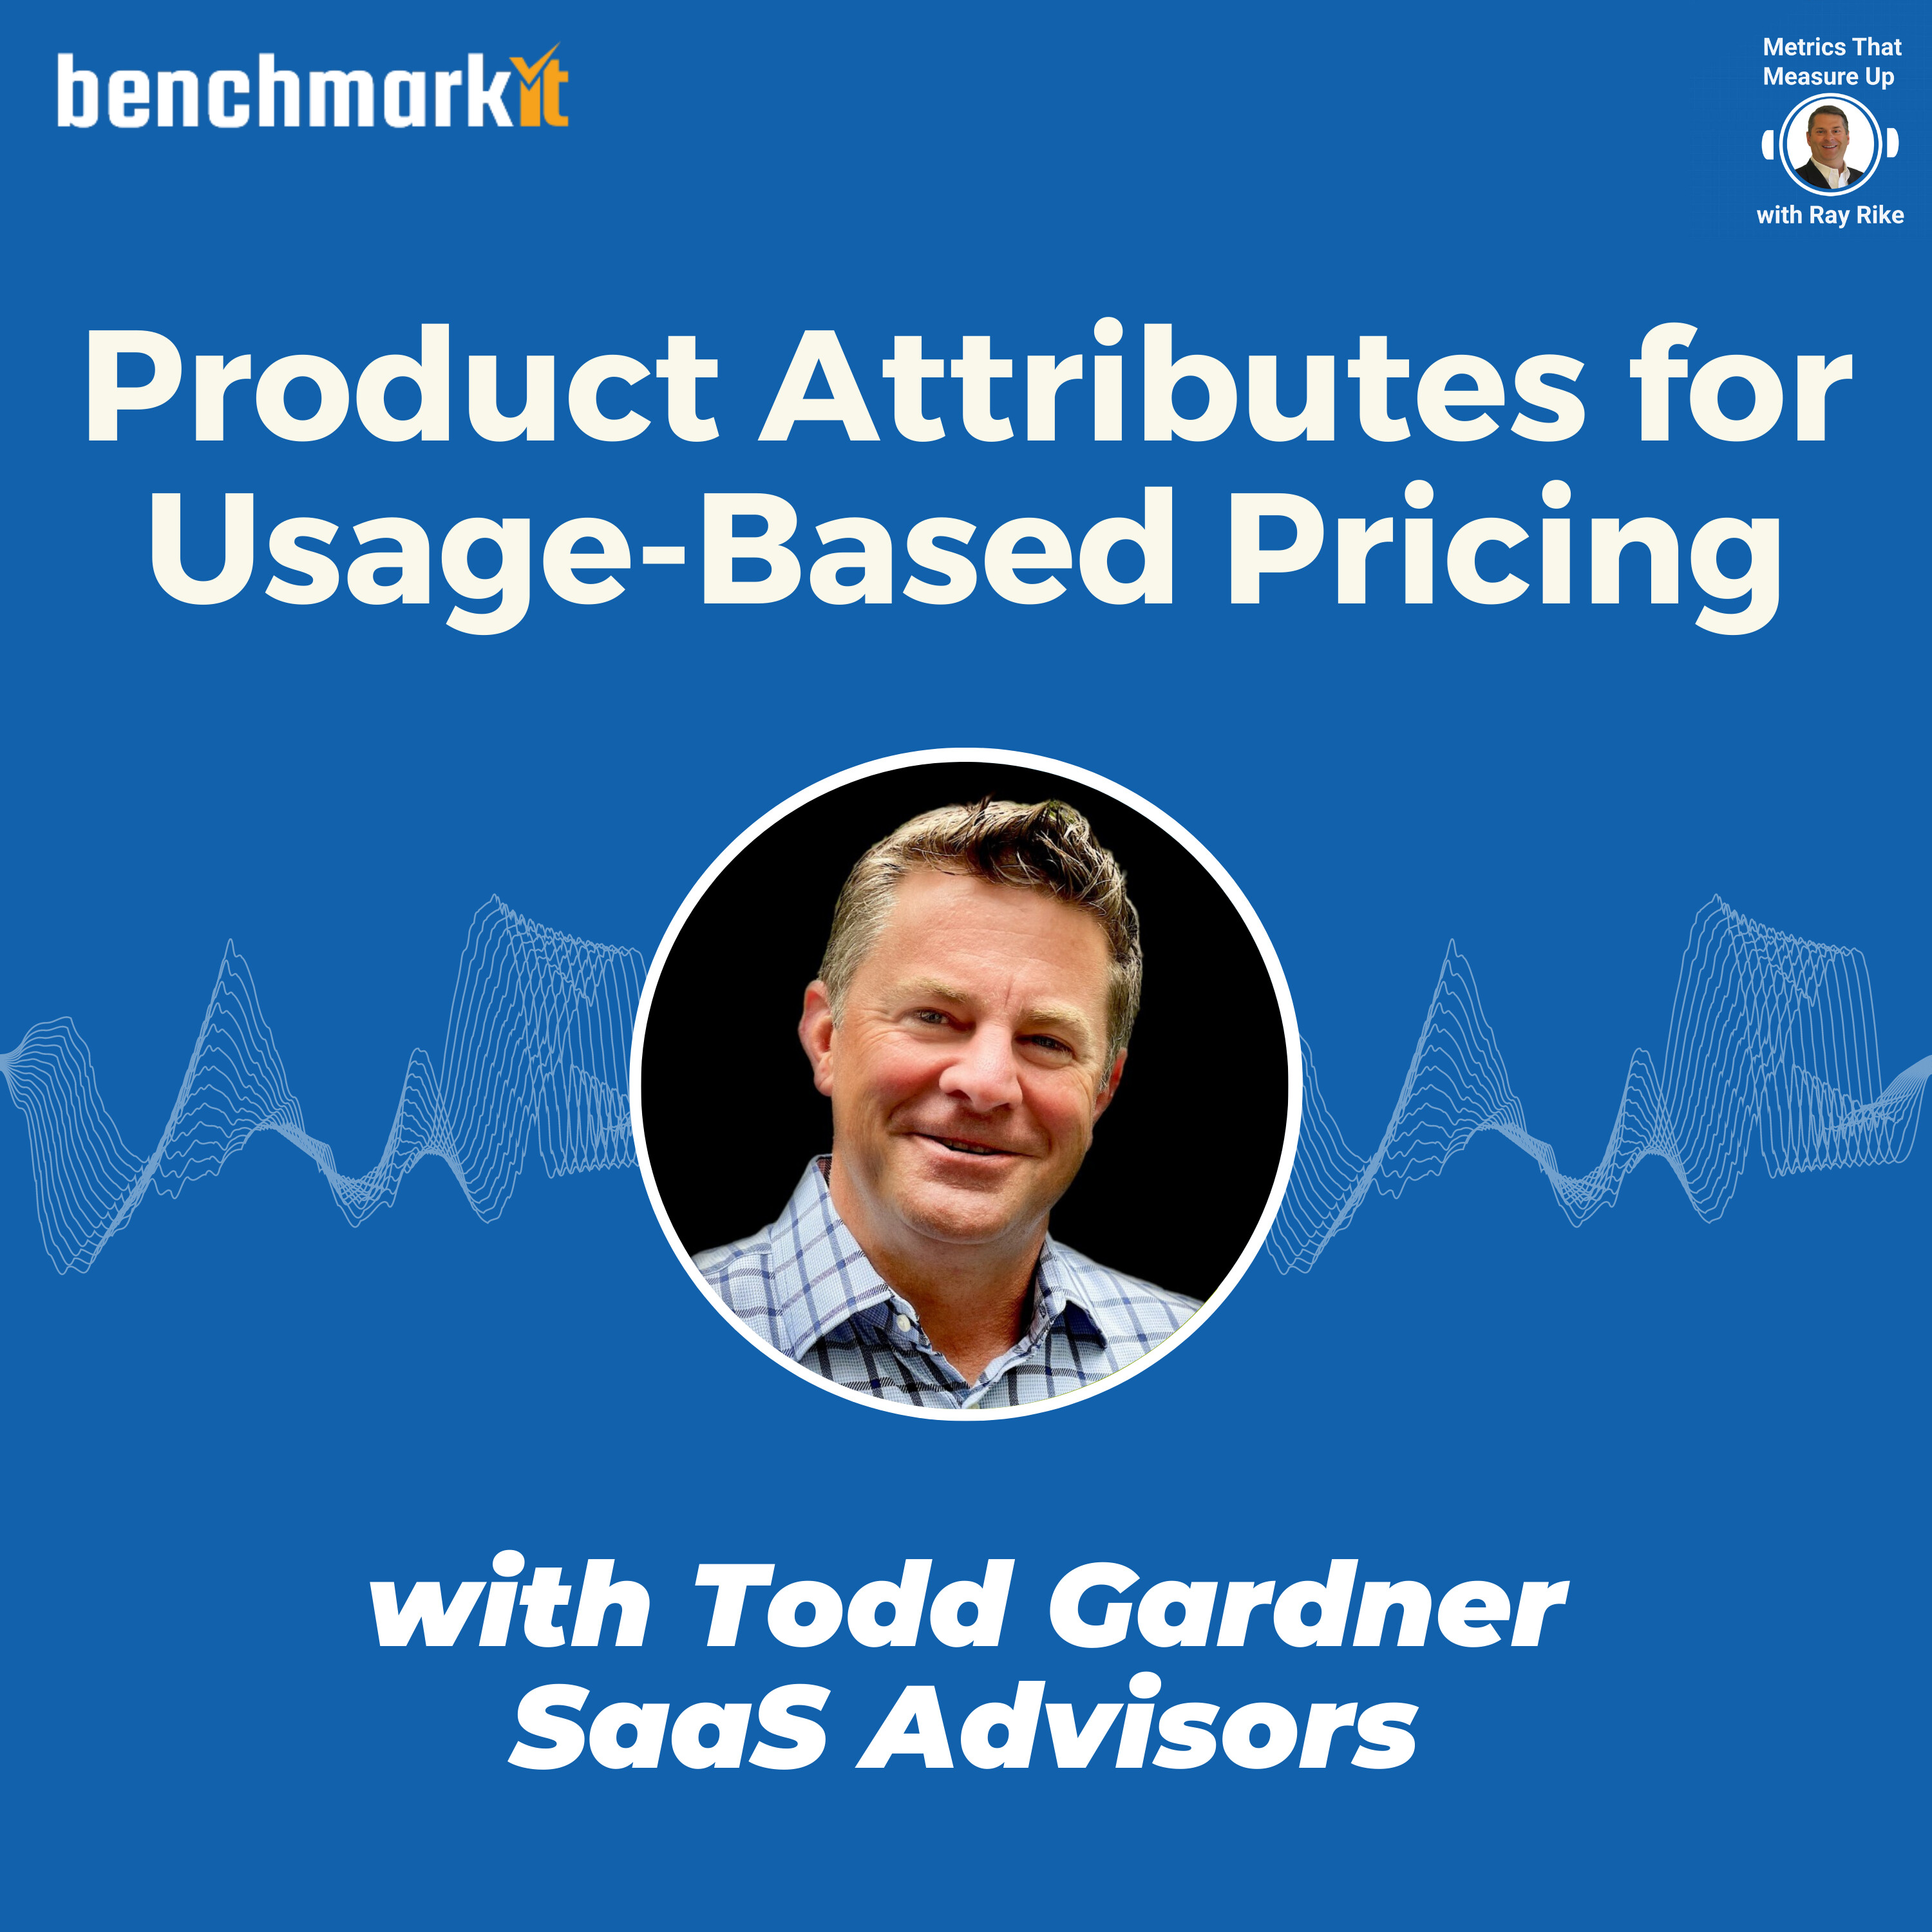 Todd Gardner - The rise of Usage-Based Pricing in B2B SaaS